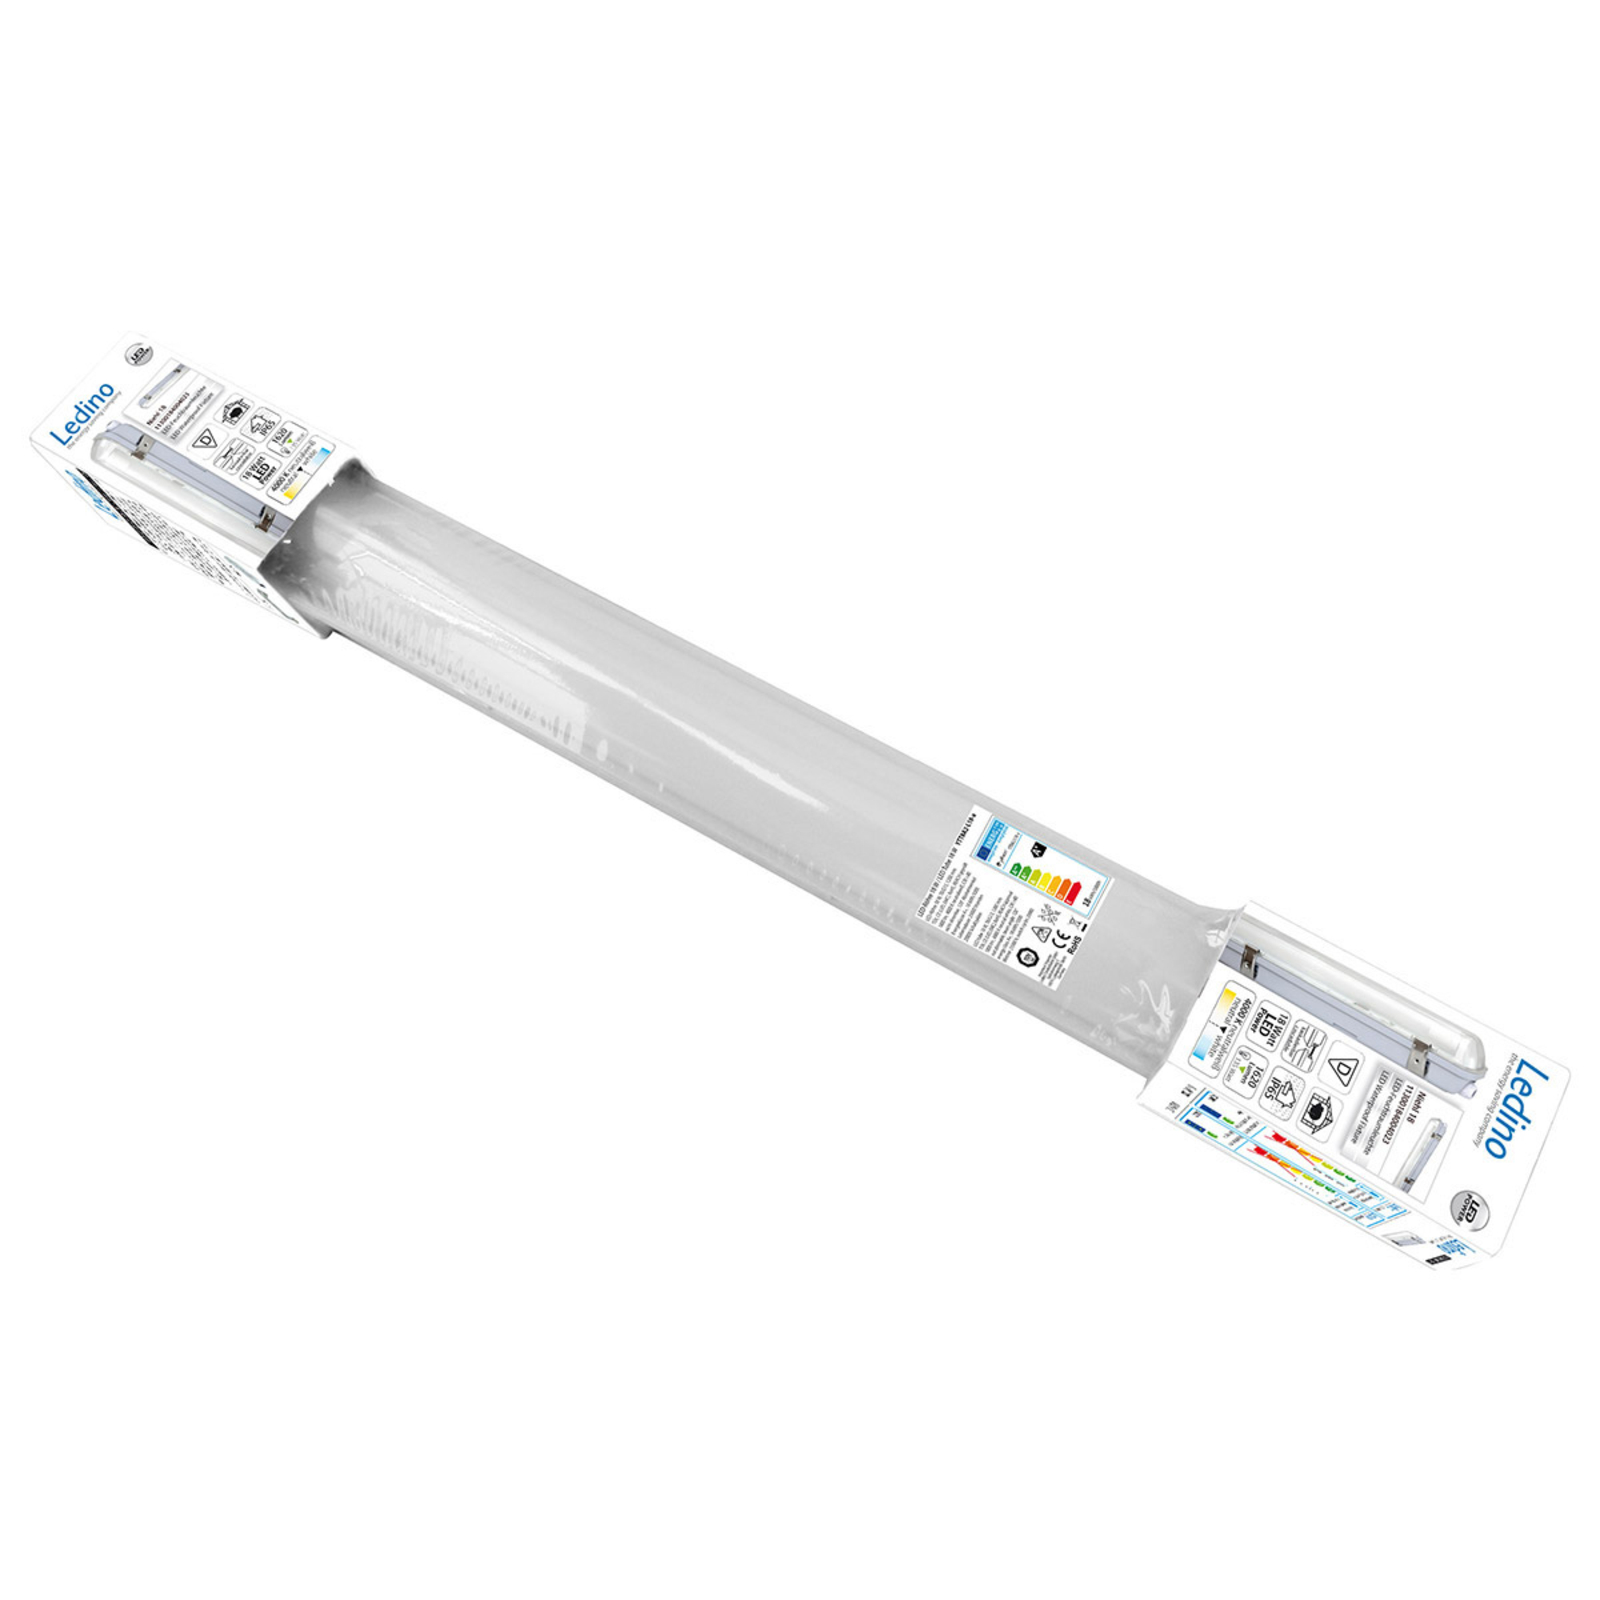 LED-våtrumslampa Niehl 18 IP65 18W